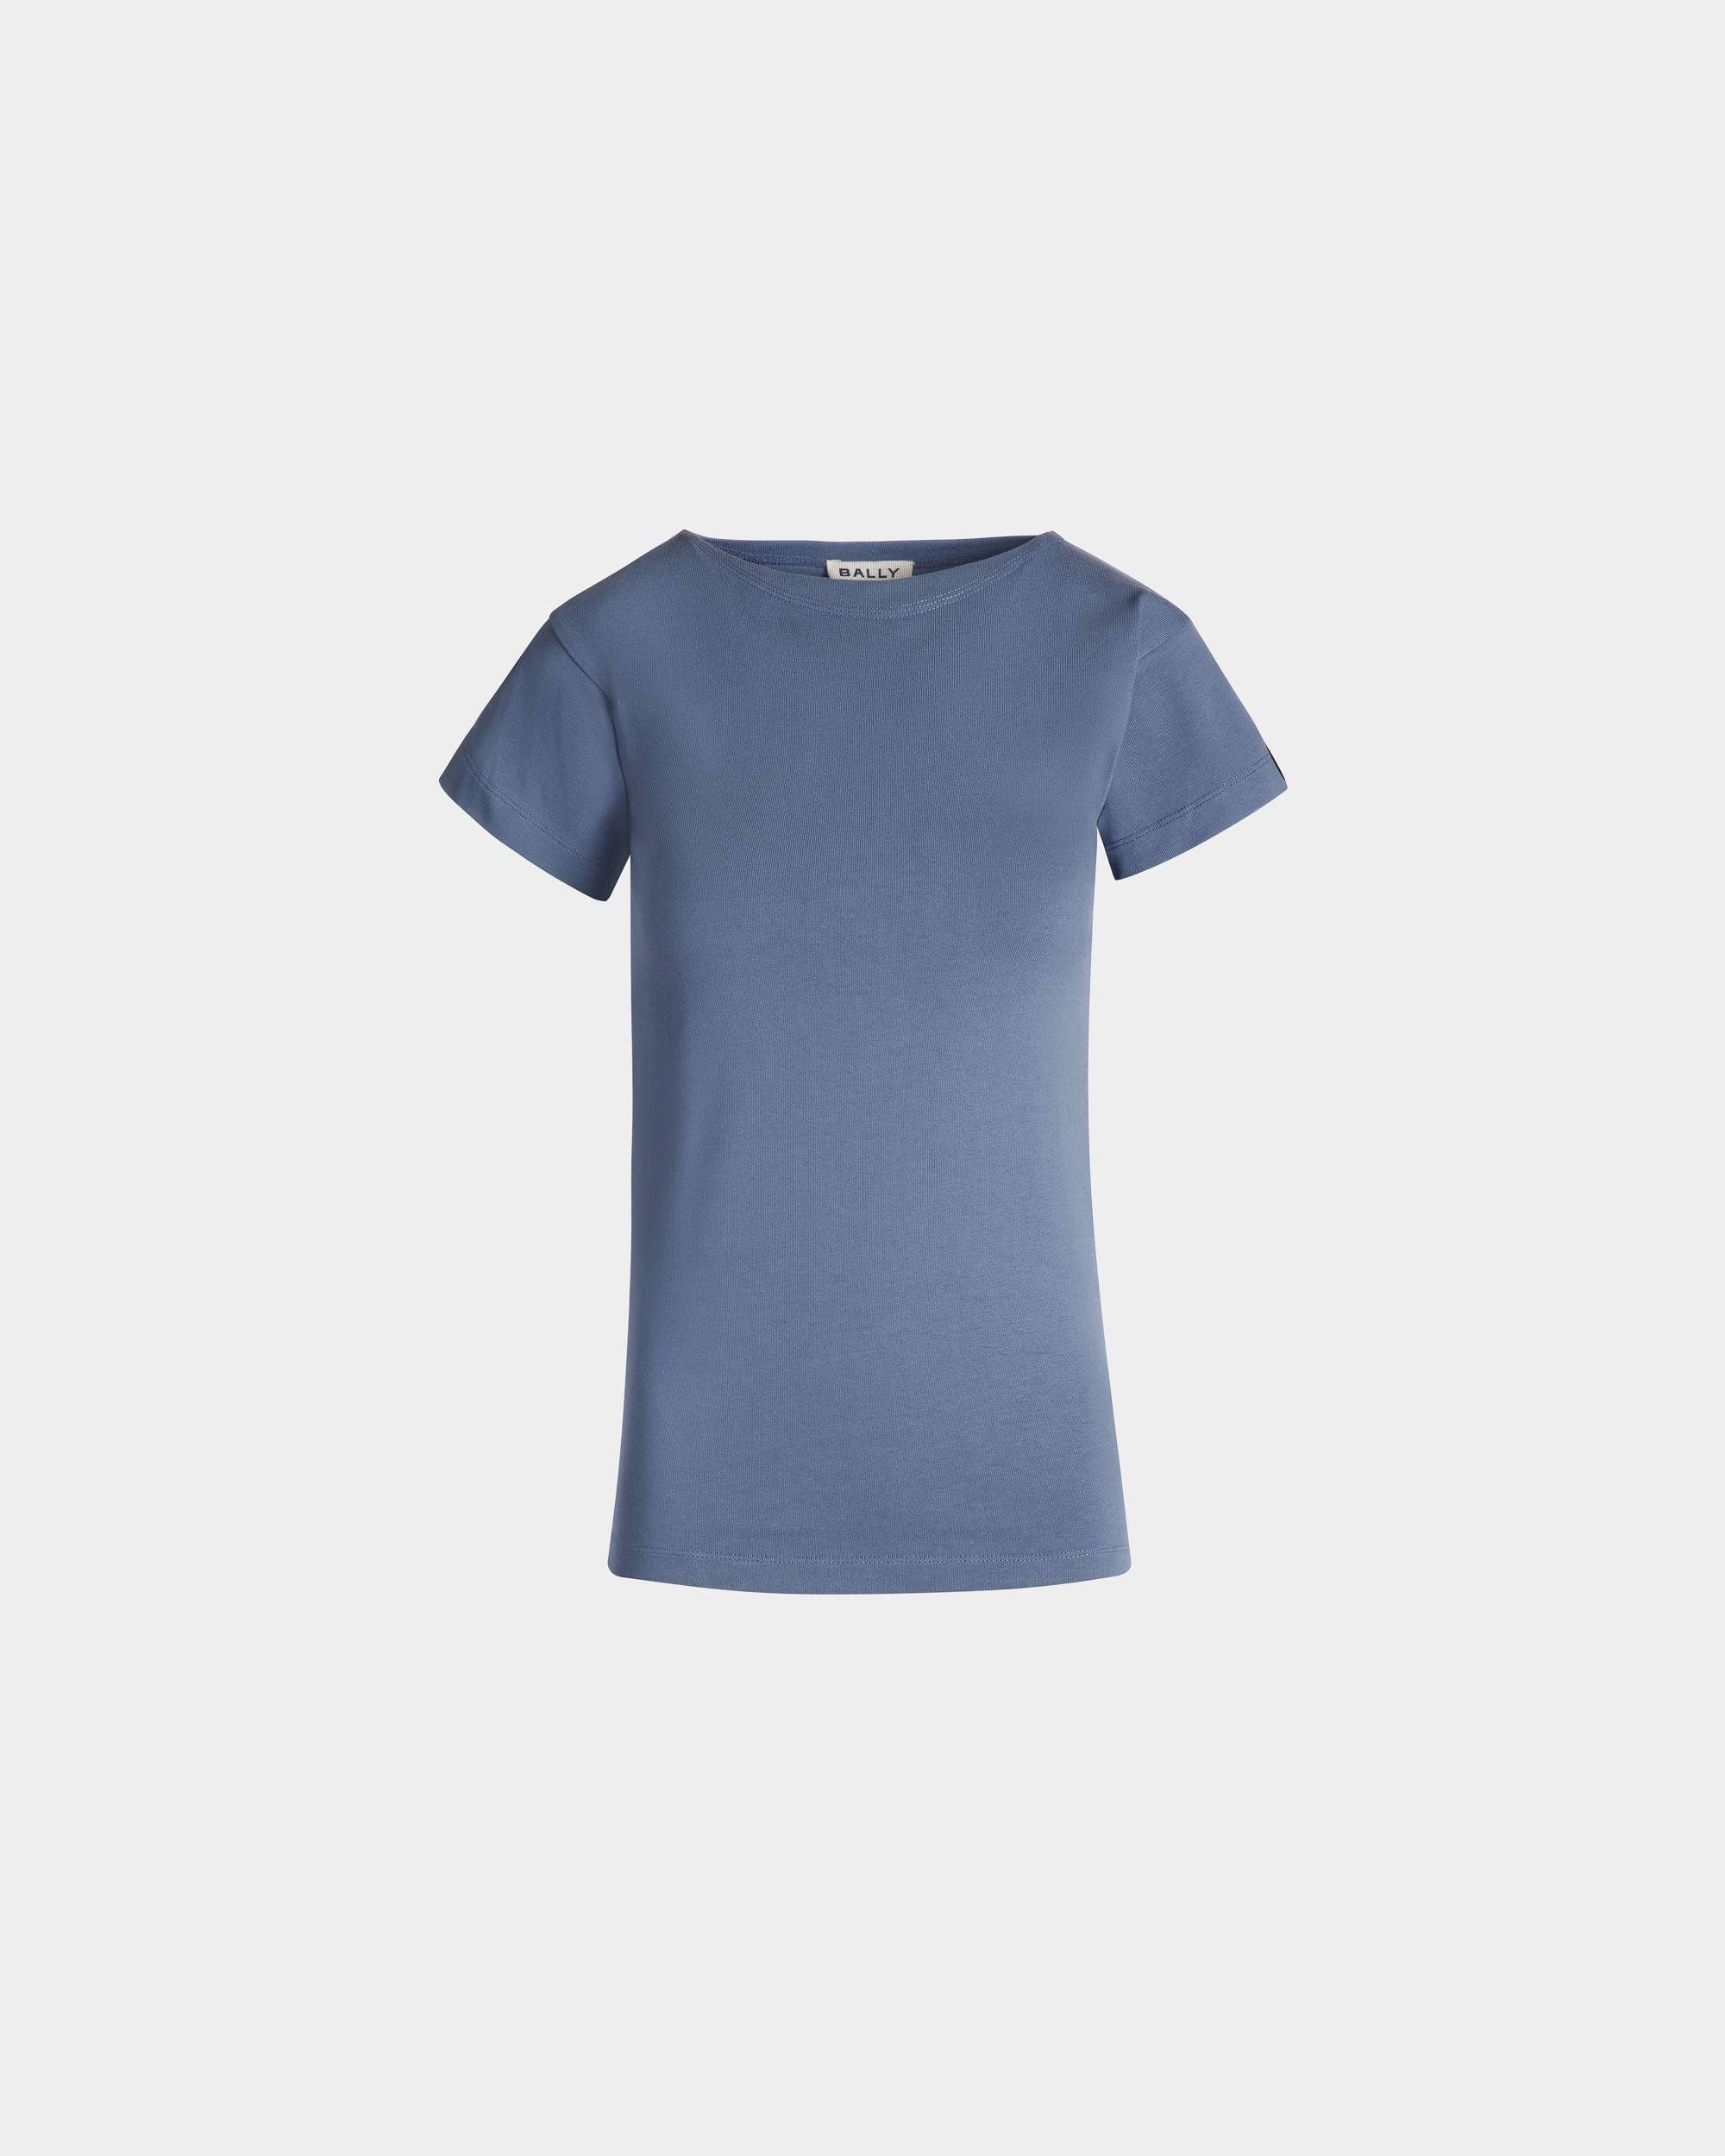 Women's T-Shirt in Light Blue Cotton | Bally | Still Life Front